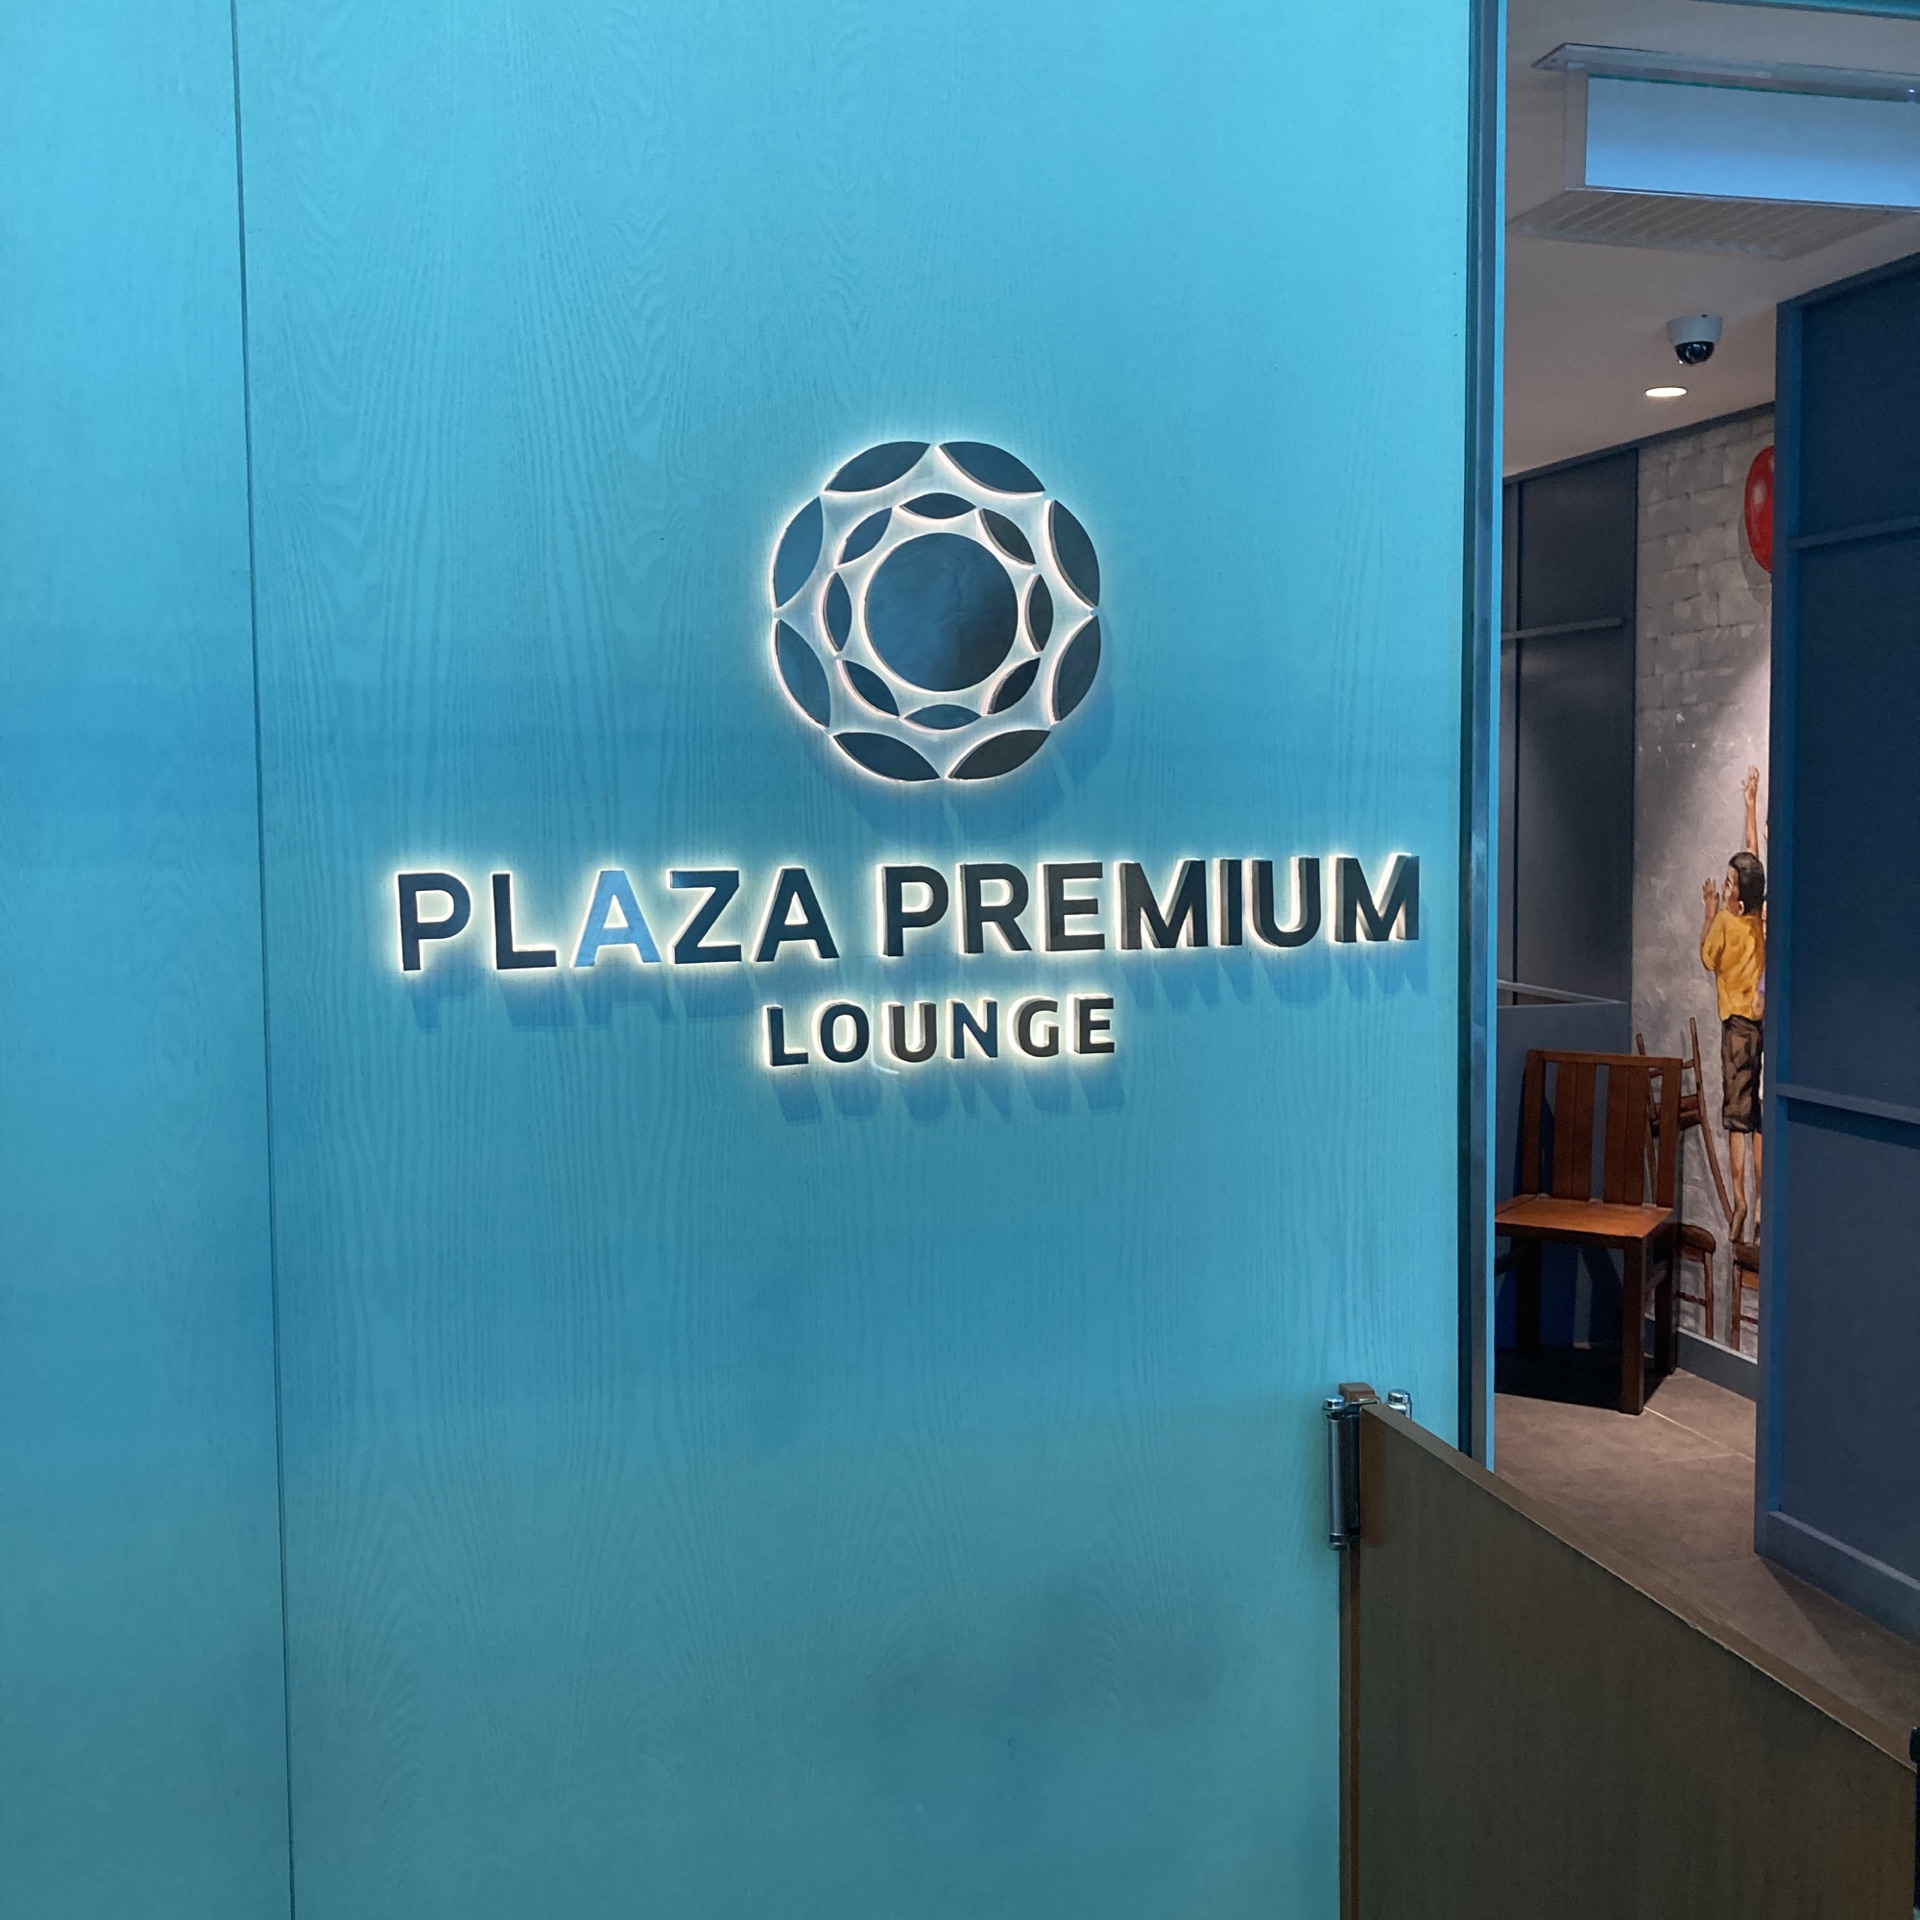 【休息室探访】马来西亚槟城国际机场Plaza Premium Lounge